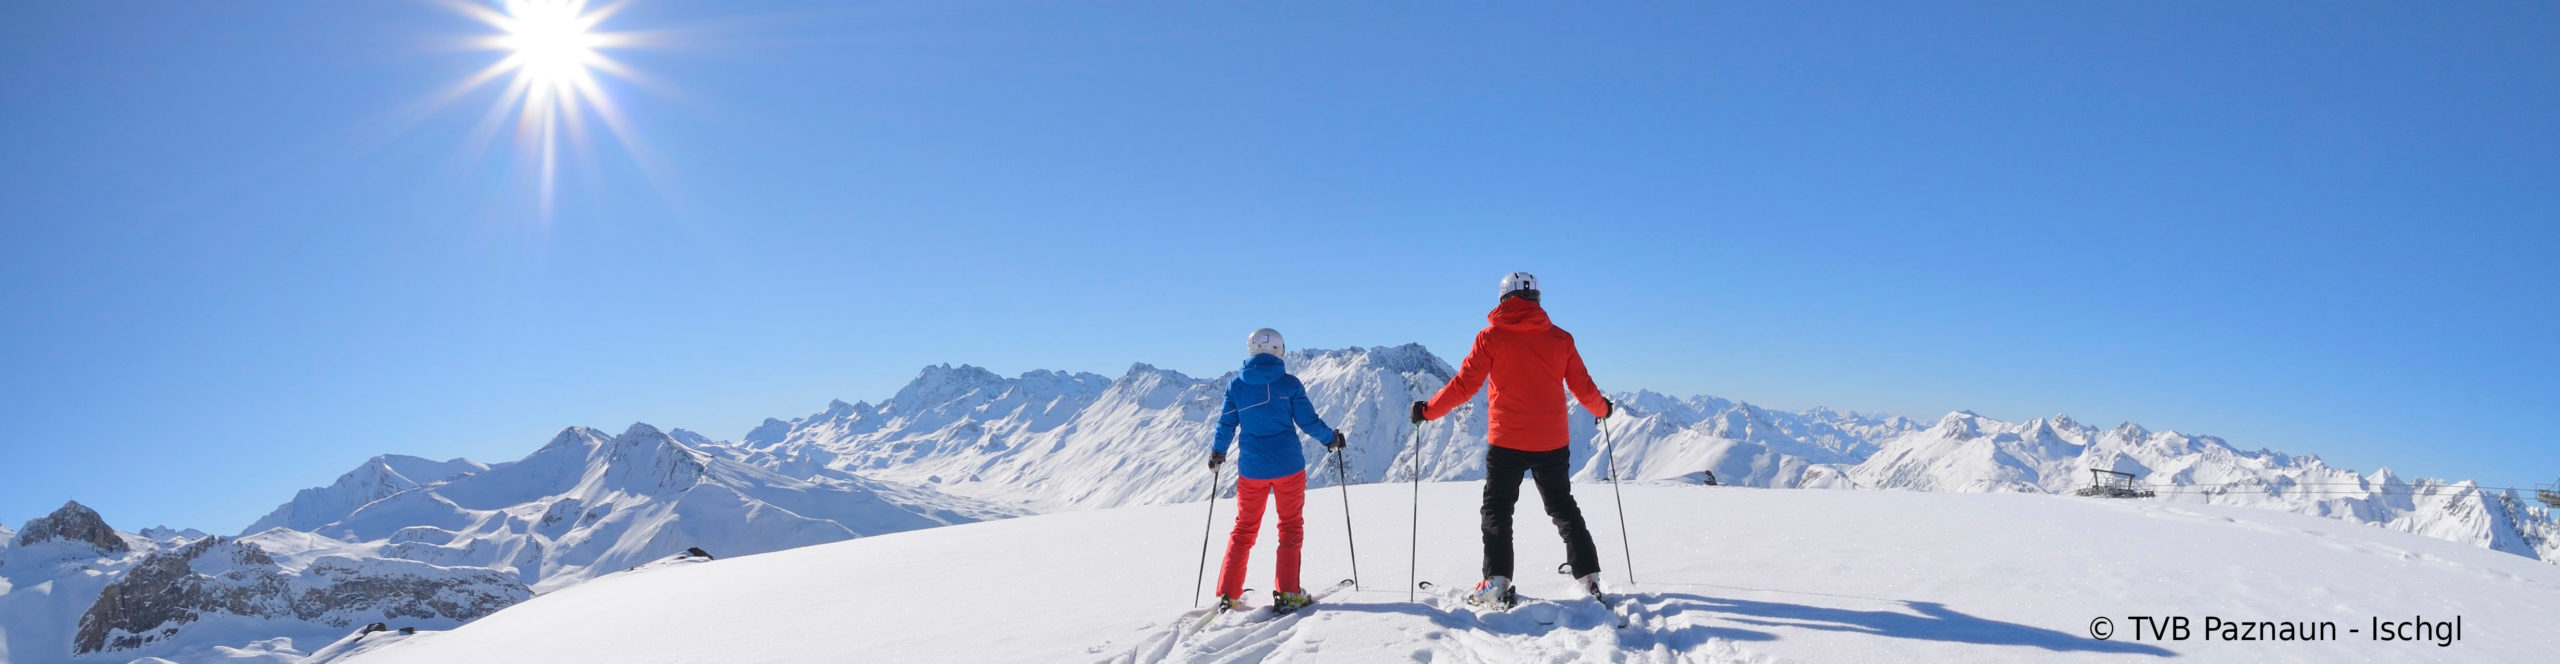 ISCHGL Opening – Skiwochenende mit 3 Skitagen 4 Sterne WellnessHotel mit Schwimmbad – ab Freitag früh 